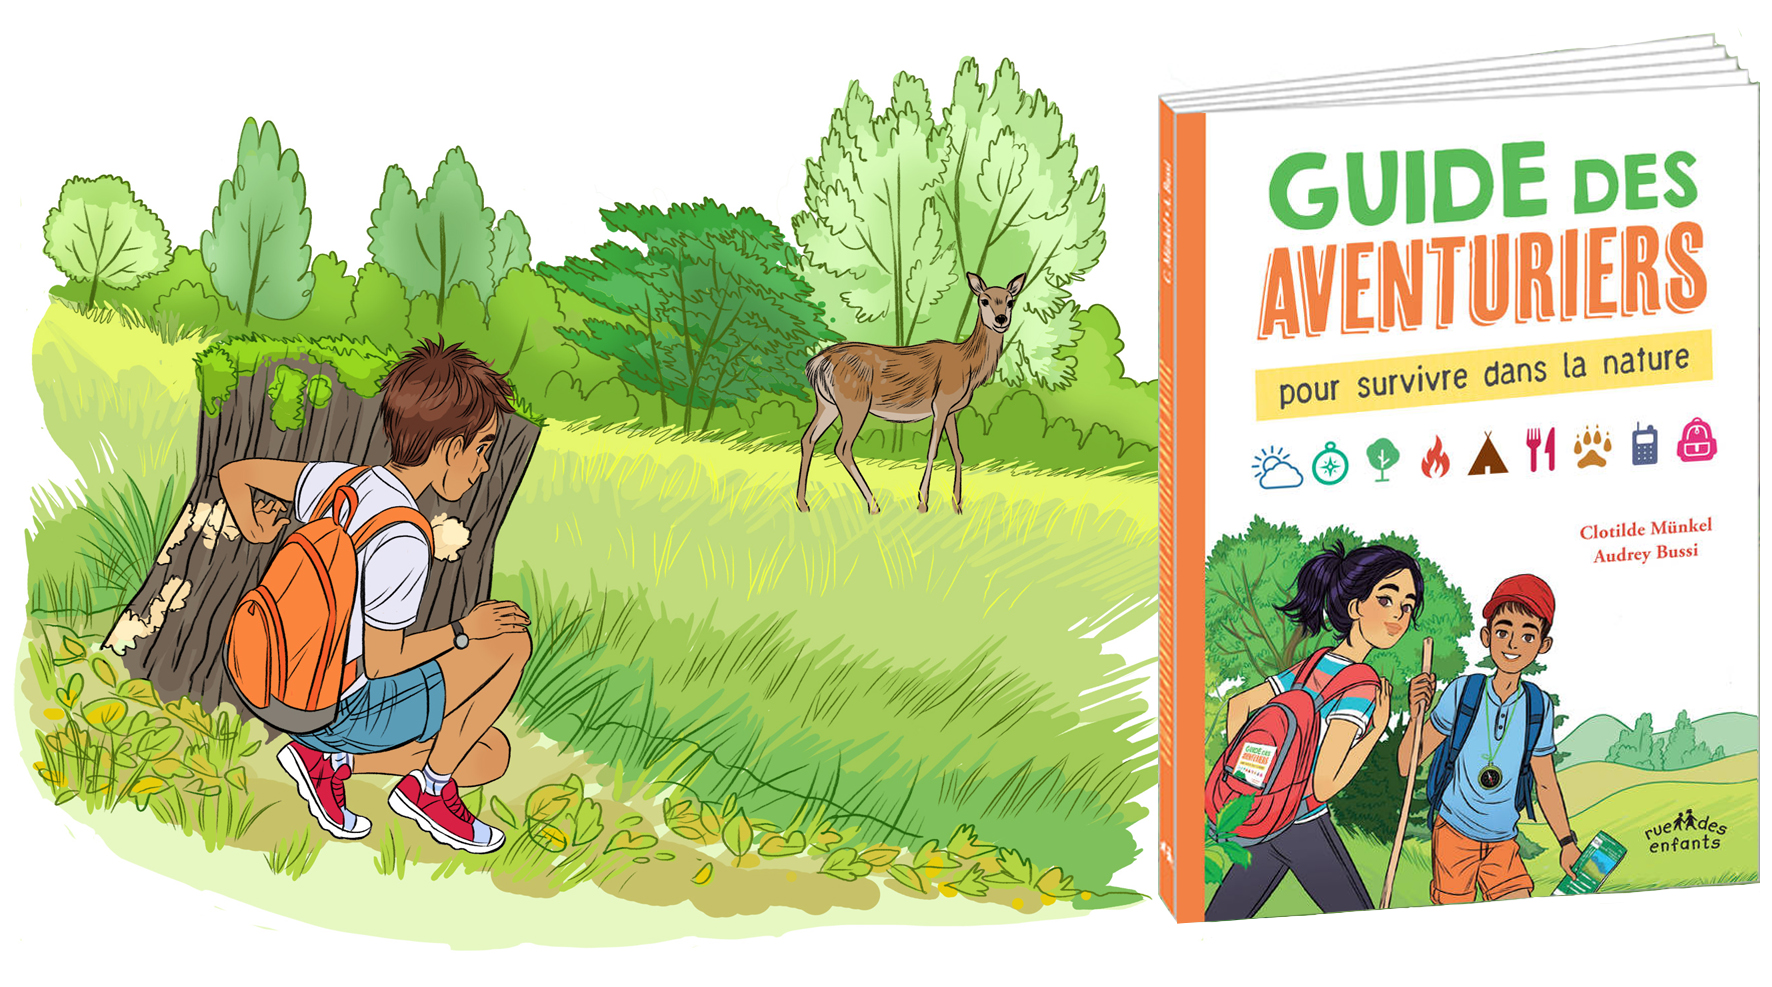 Guide des aventuriers, extraits ouvrage de conseils et information -  édition Rue des enfants